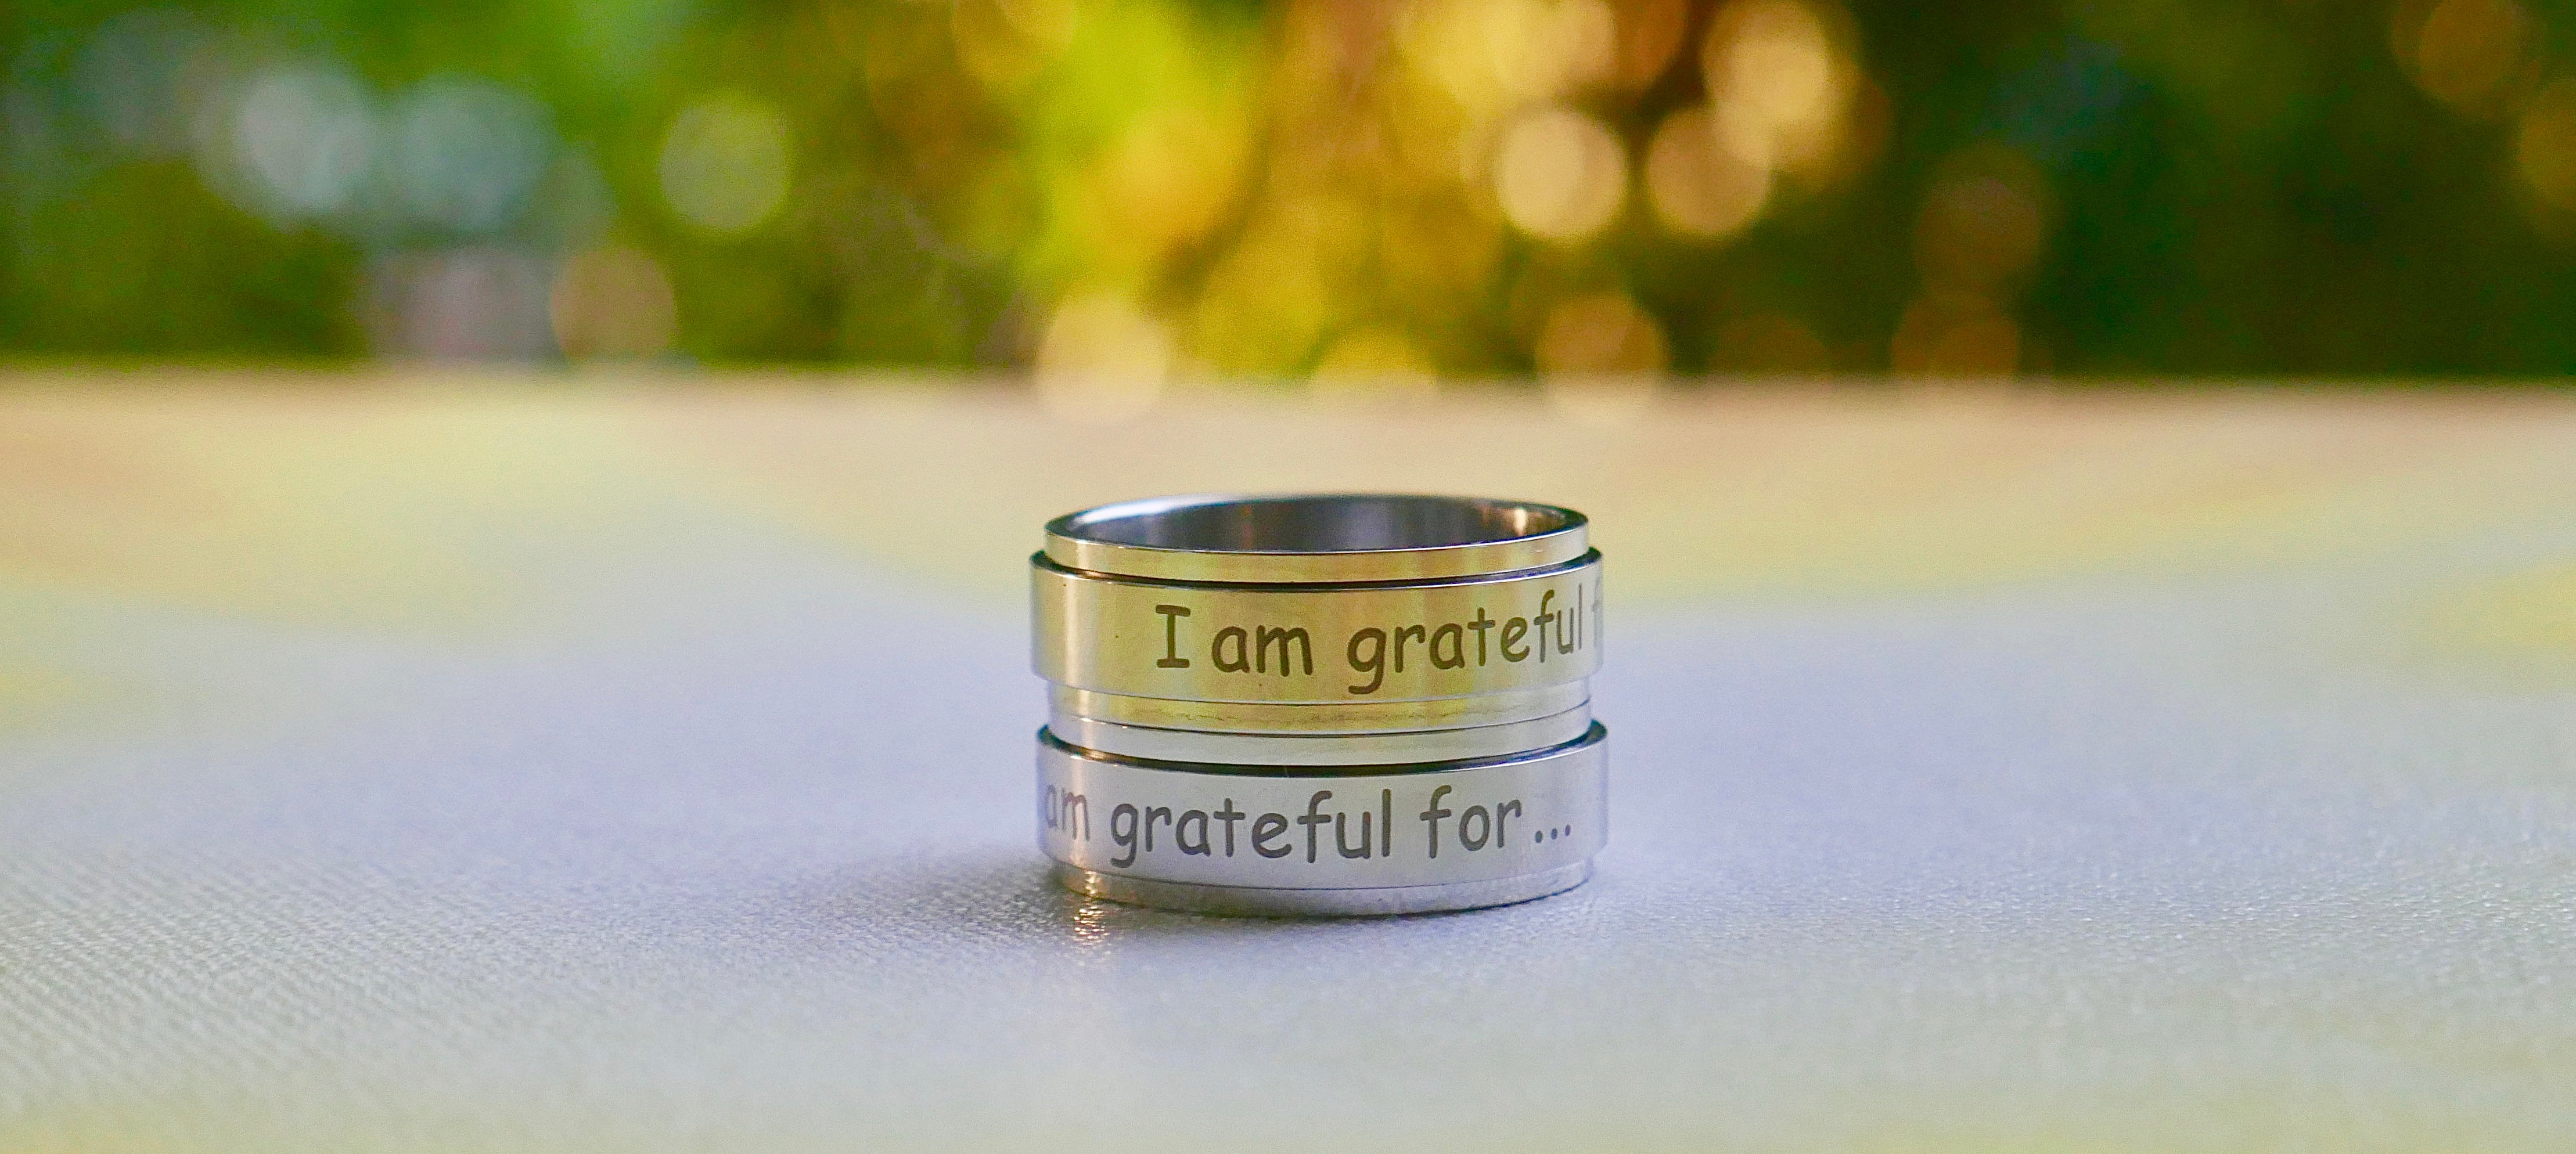 I am grateful for... ring